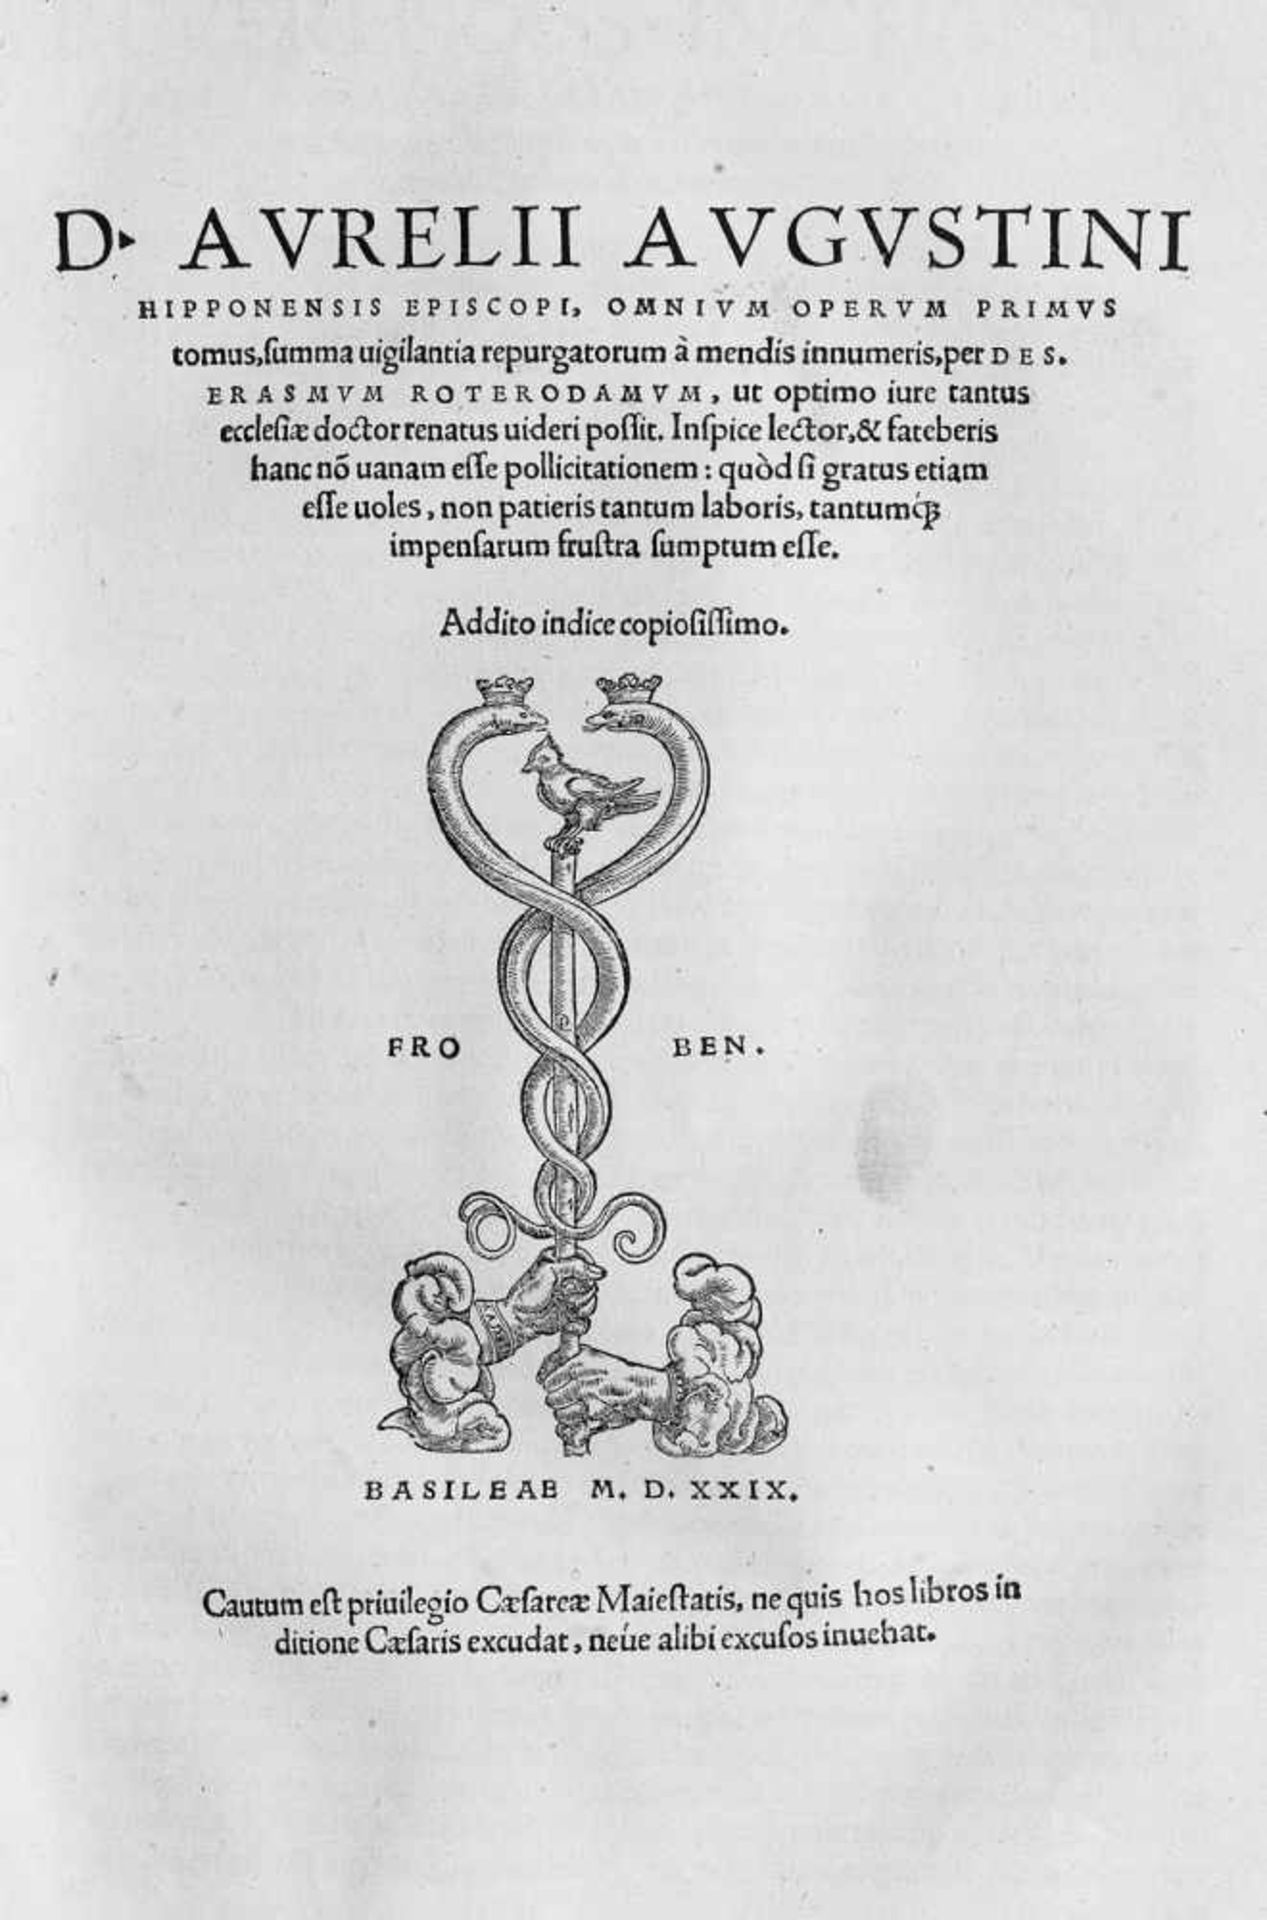 Augustinus, Aurelius: Opera omniaAugustinus, Aurelius. Opera omnia. Hrsg. von Erasmus. Index und